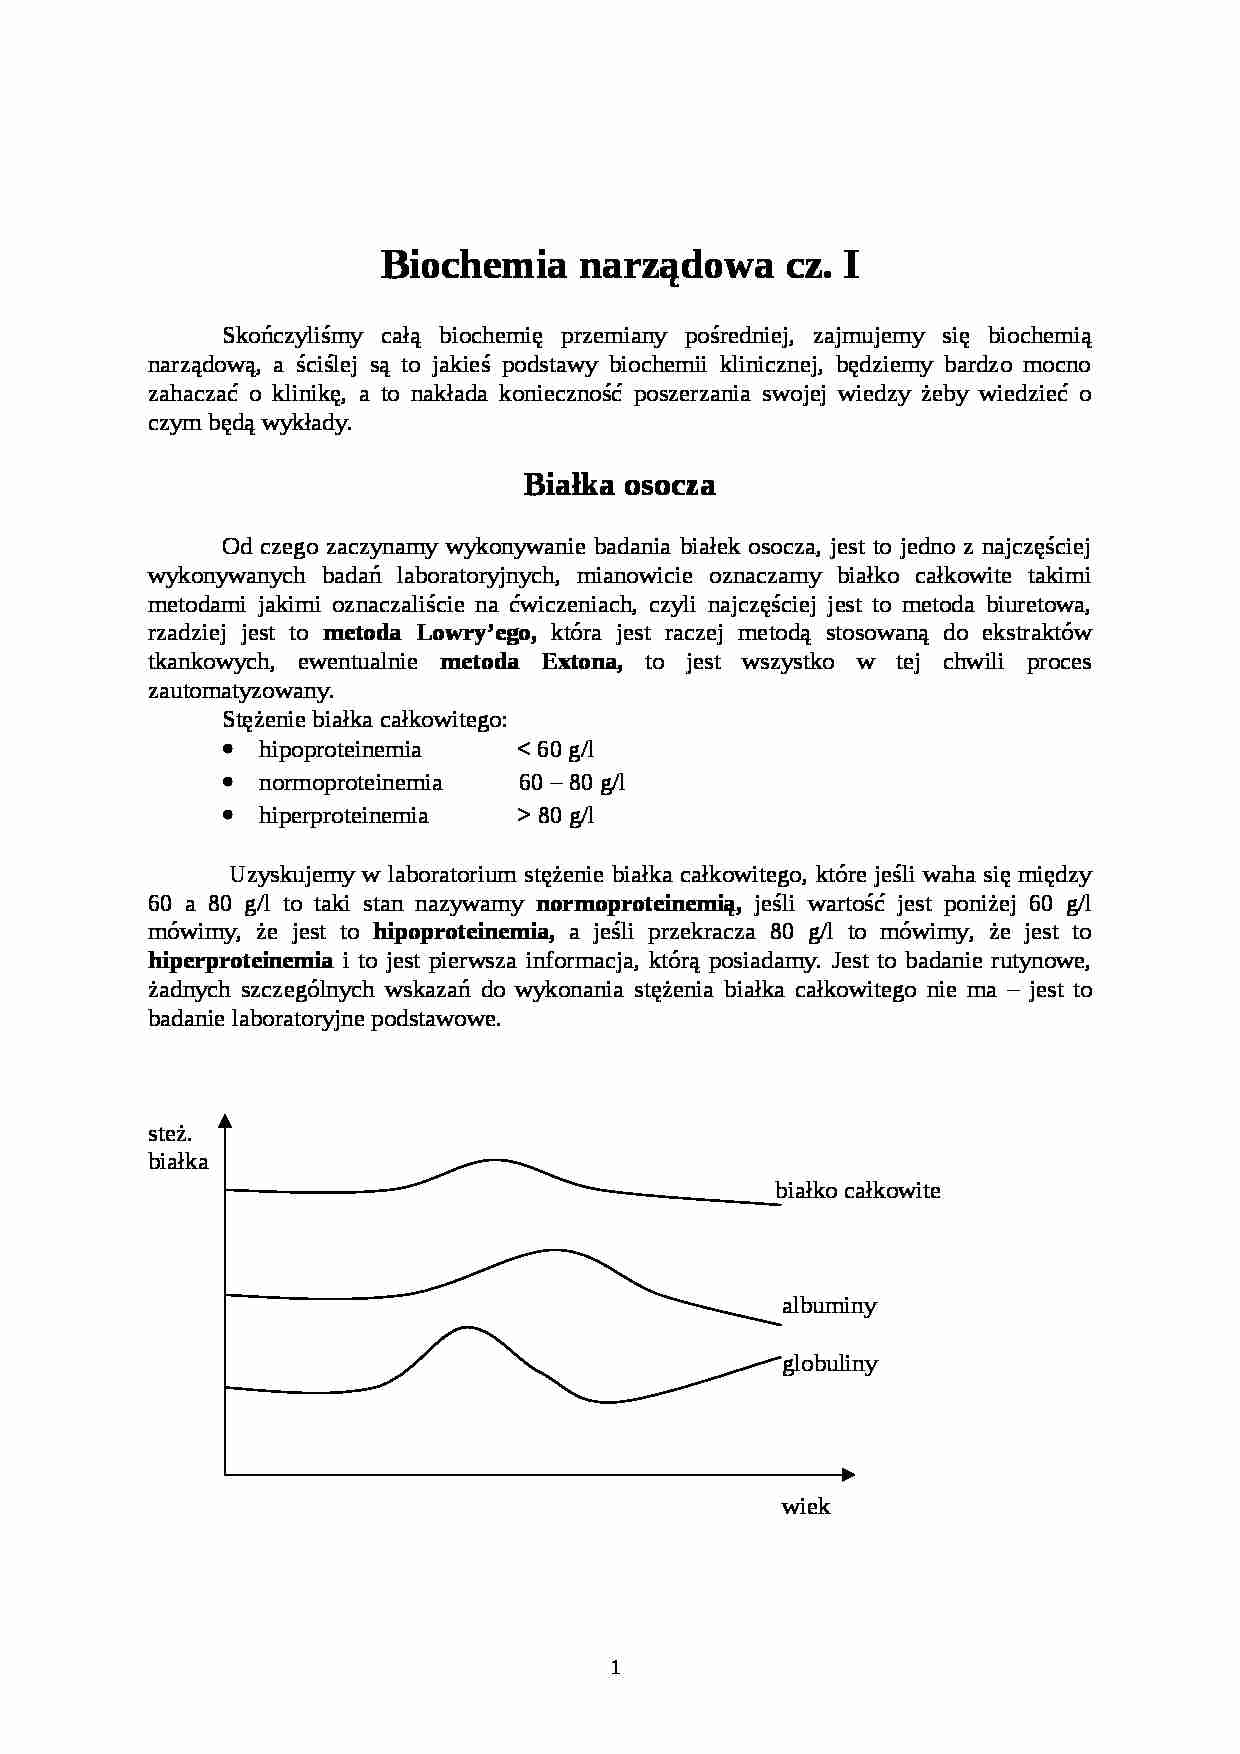 Biochemia narządowa - wykład - strona 1